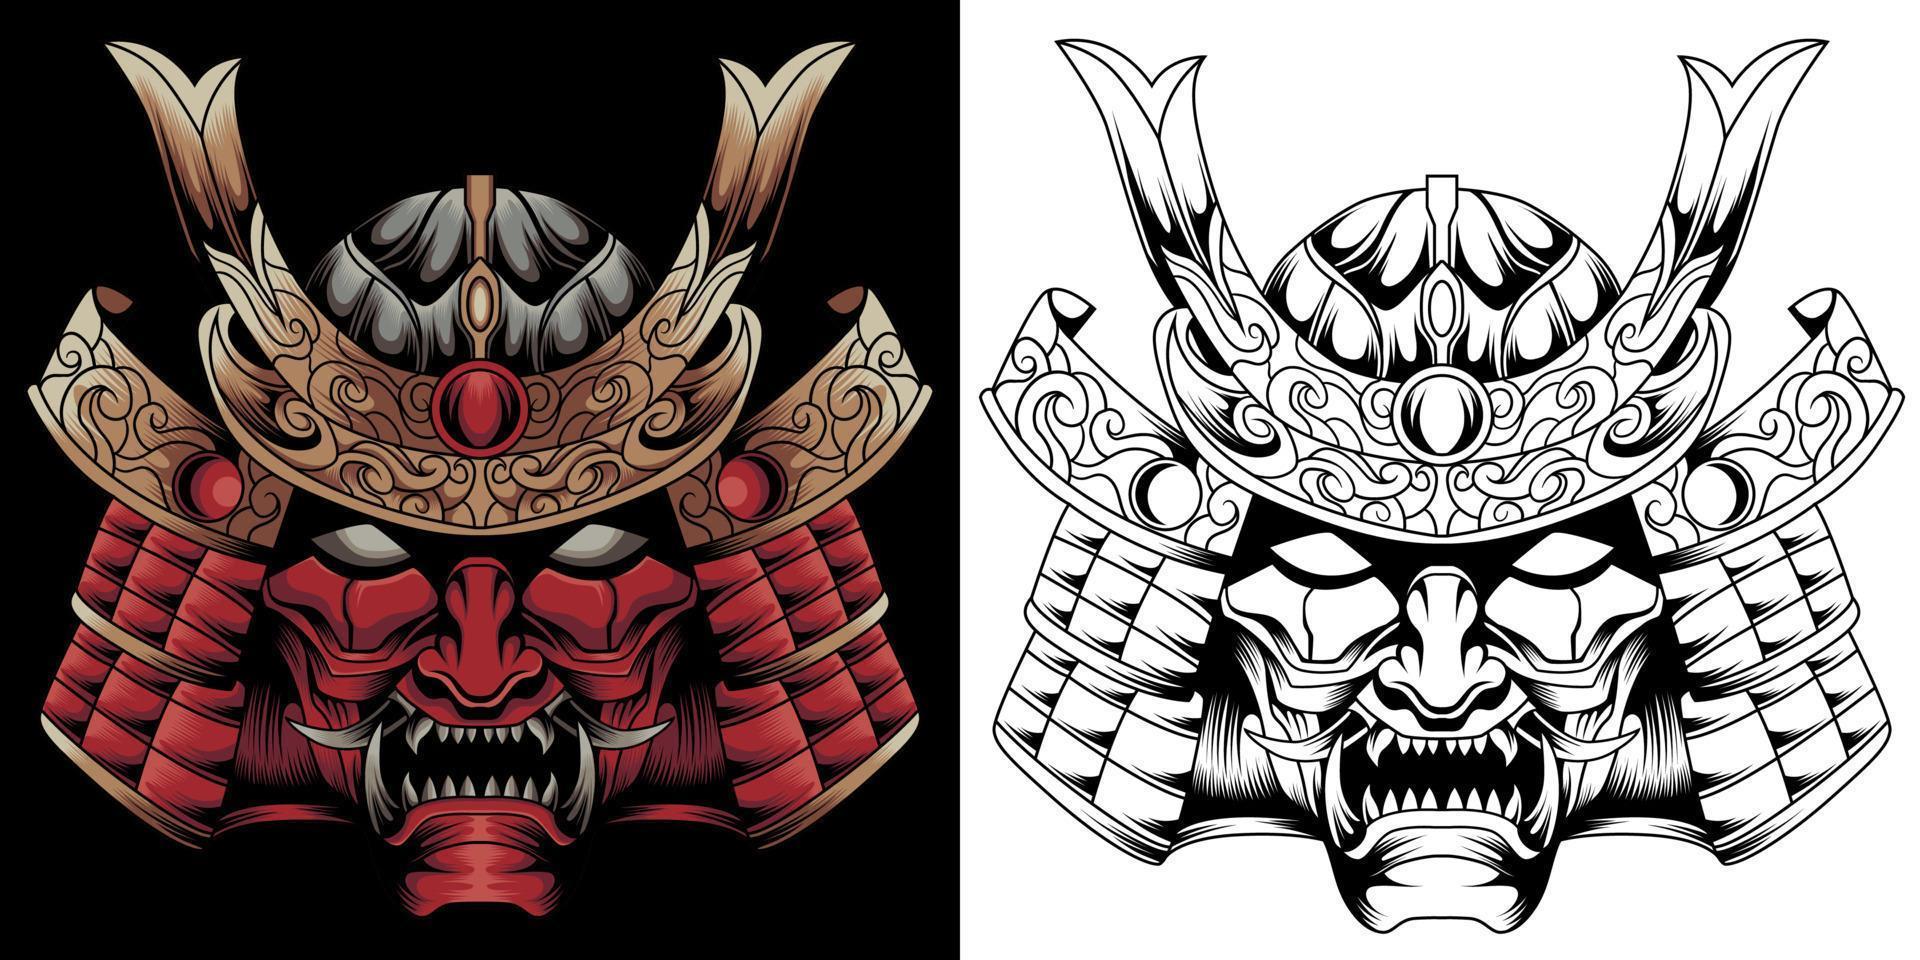 Samurai-Krieger-Maske. traditionelle rüstung des japanischen kriegers. vektorillustration, hemdgrafik. vektor